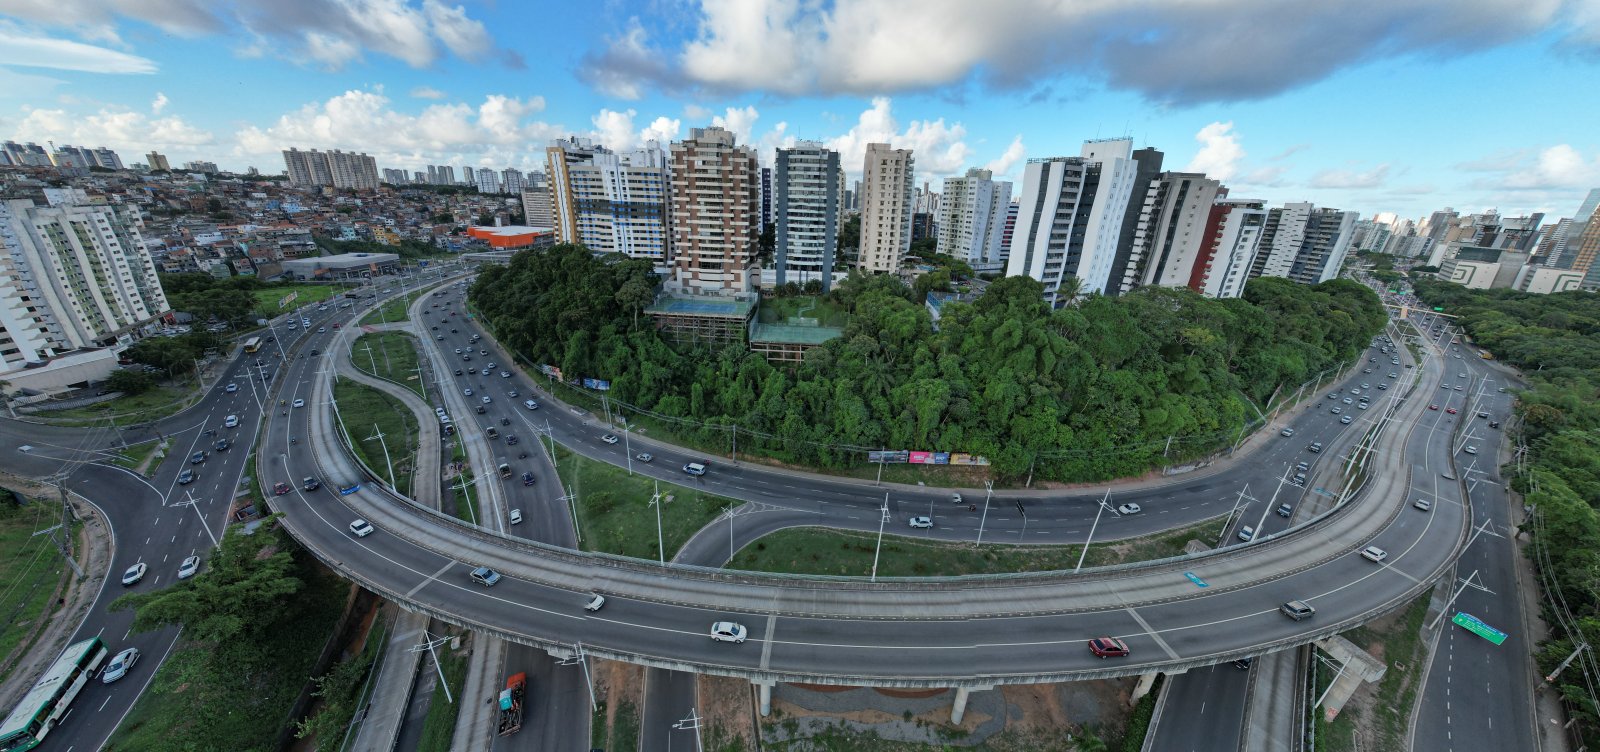 Menos verde, mais cimento: Concreto avança pela cidade, enquanto áreas verdes são alvo de leilão em Salvador